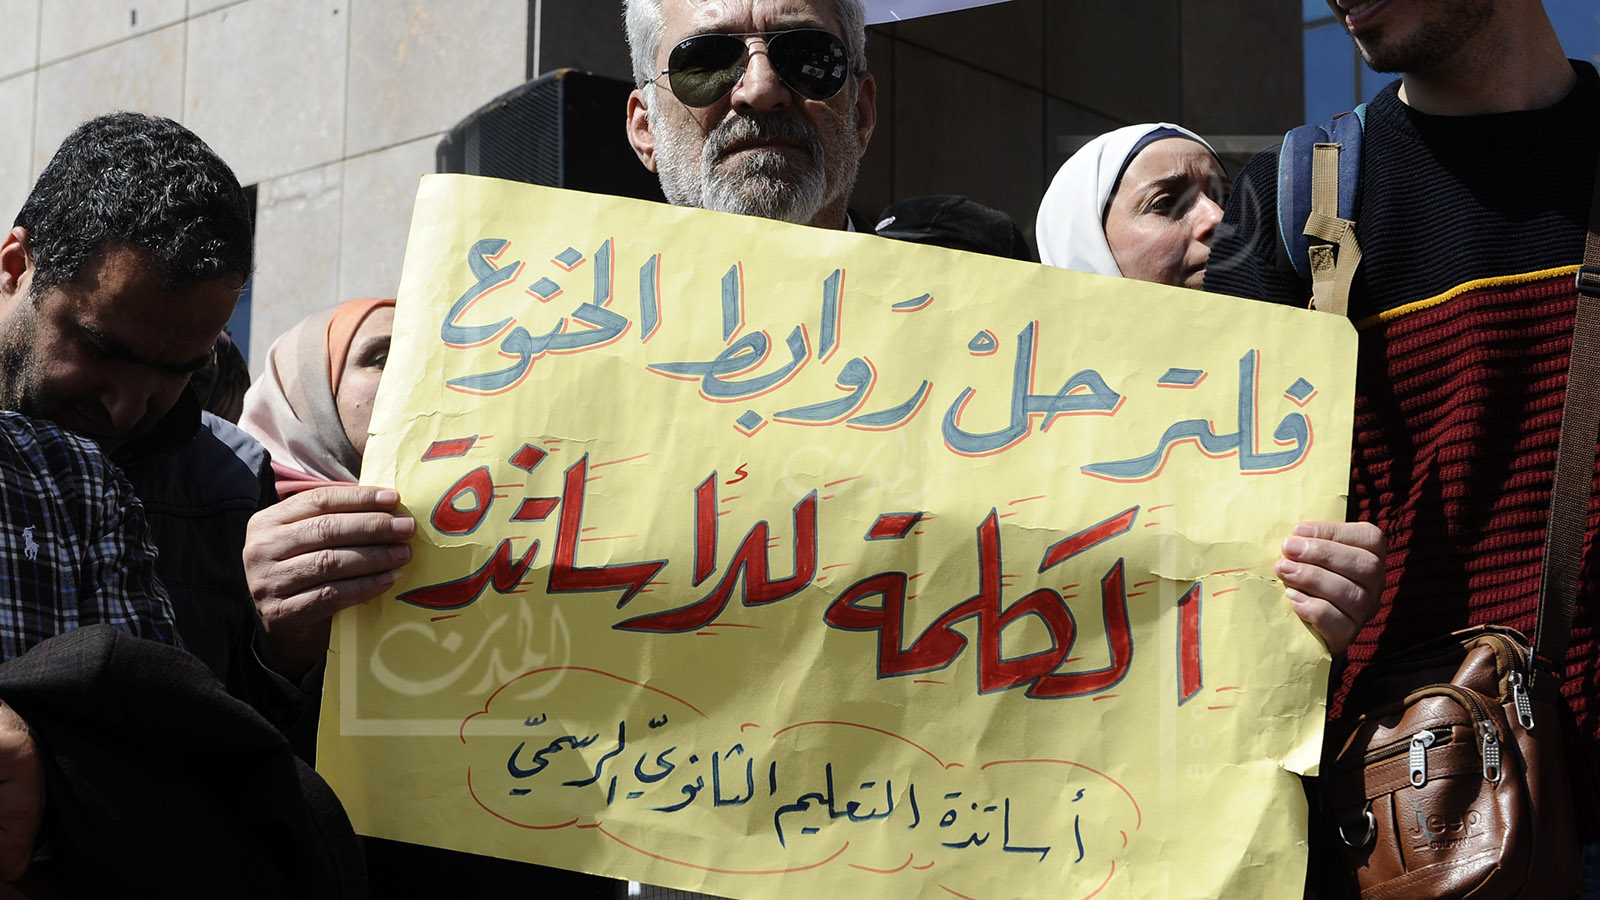 موظفو "الدولة" المتمردون يخوضون معركة "الفساد الإداري"..عبر السوشال الميديا